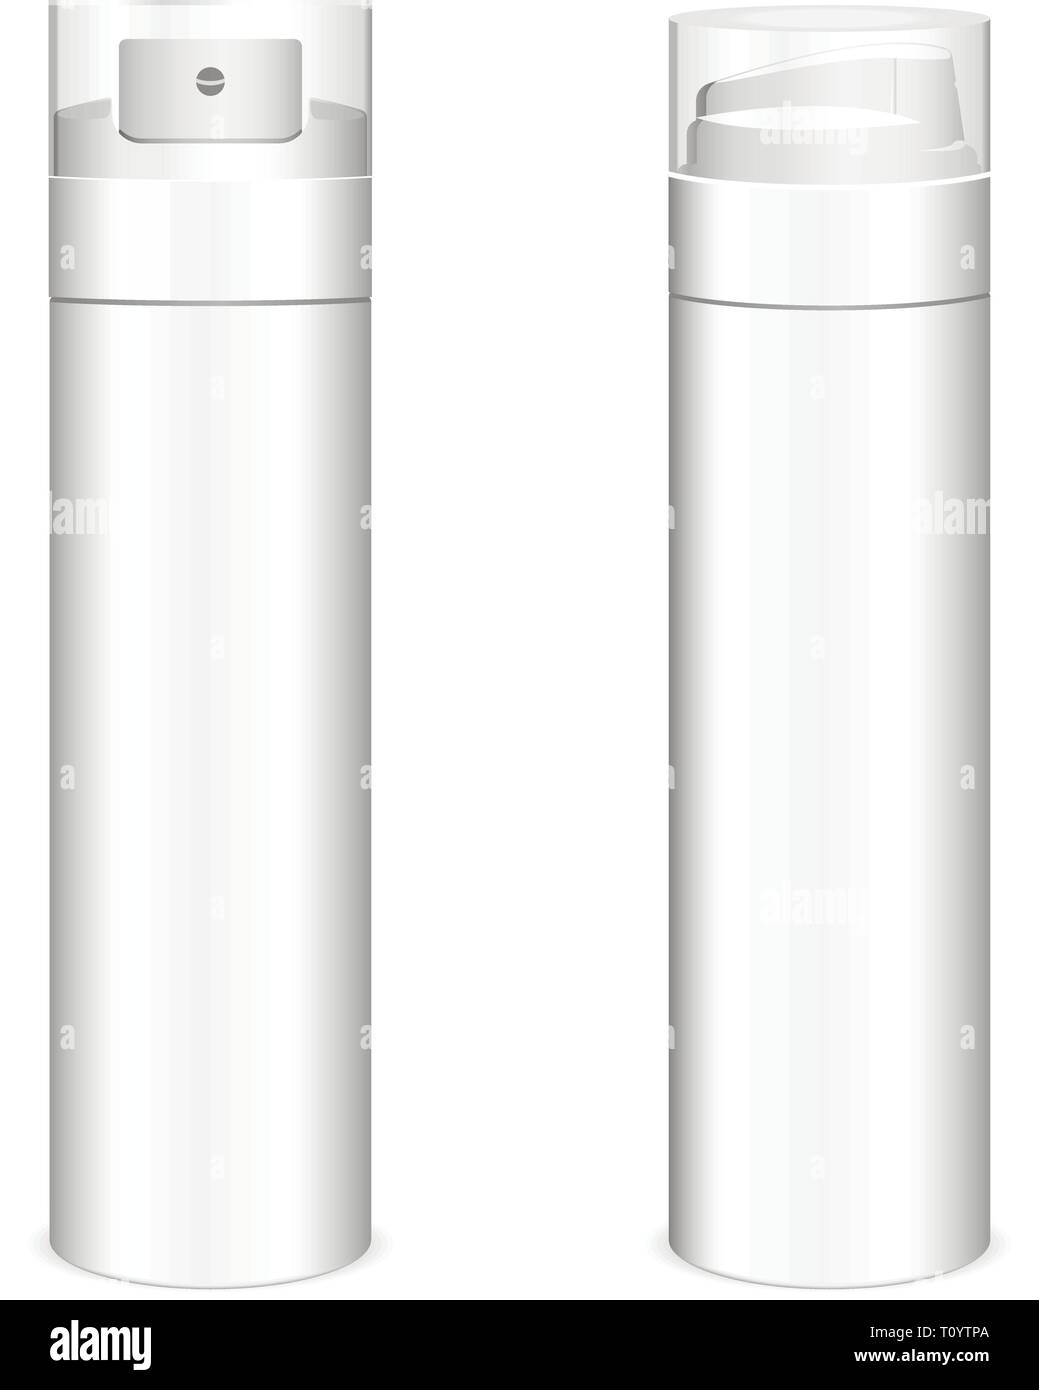 Botella de espuma o gel de afeitar eps realista10 ilustración vector plantilla, aislado sobre fondo blanco. Maqueta de cosméticos de baño para personal de embalaje Ilustración del Vector